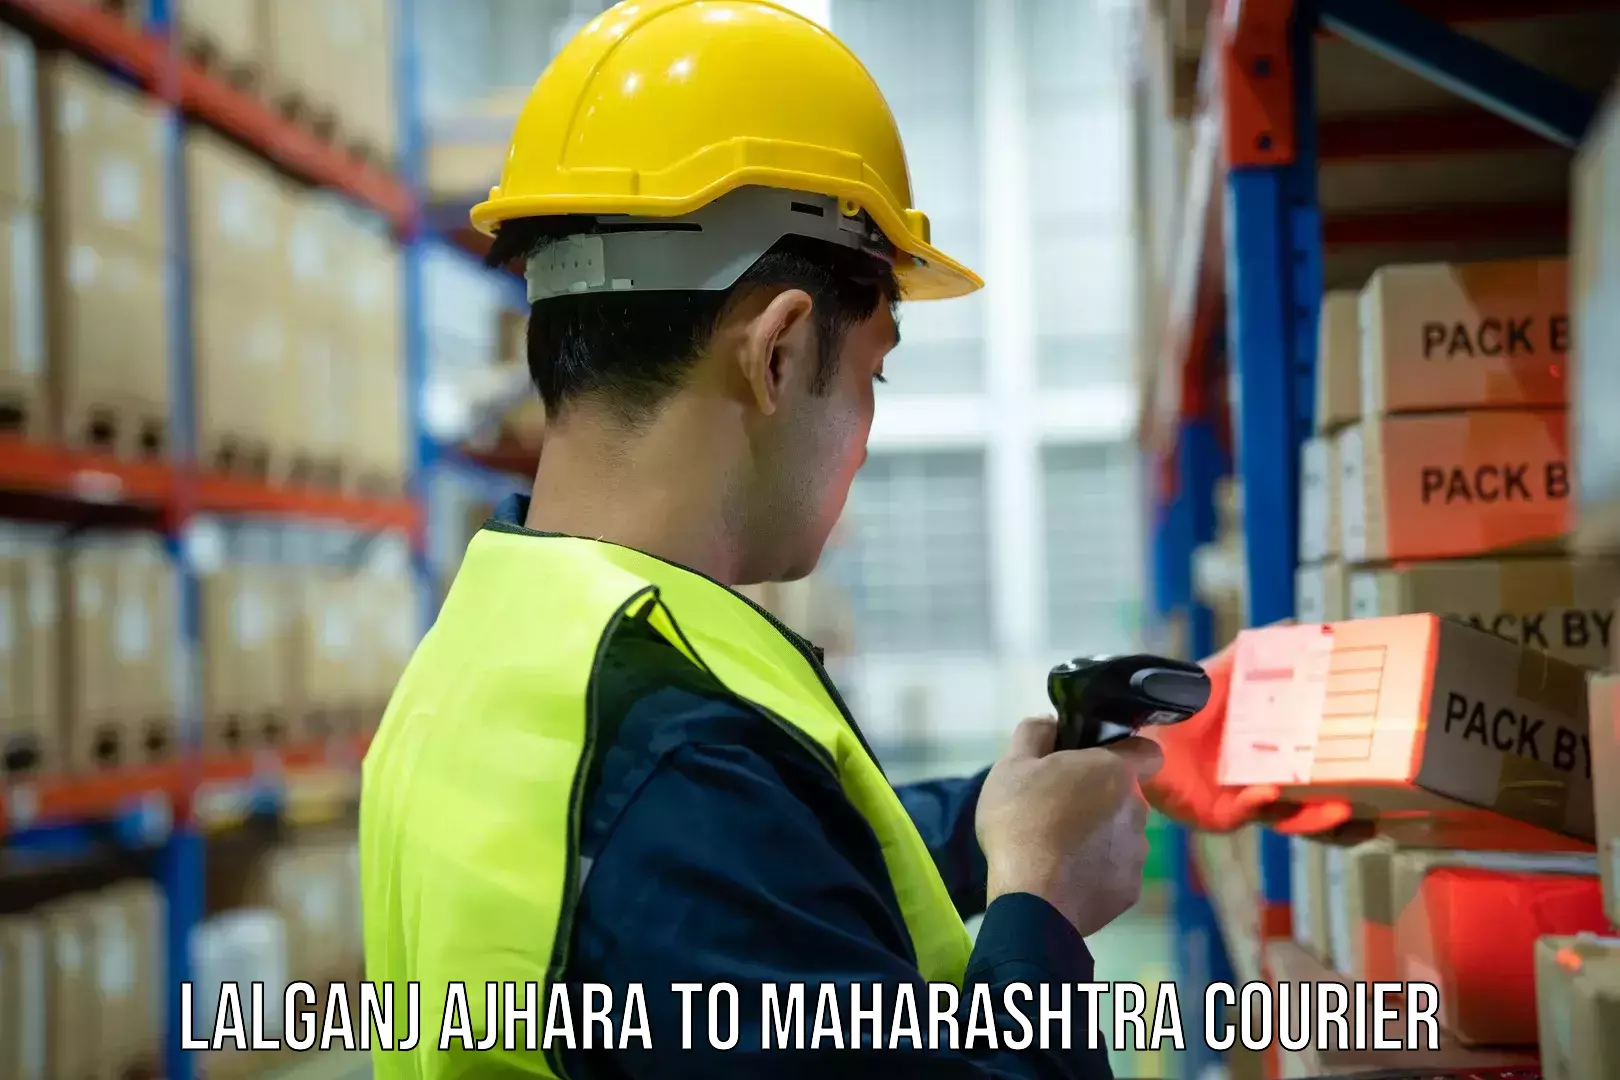 Efficient courier operations Lalganj Ajhara to Maharashtra